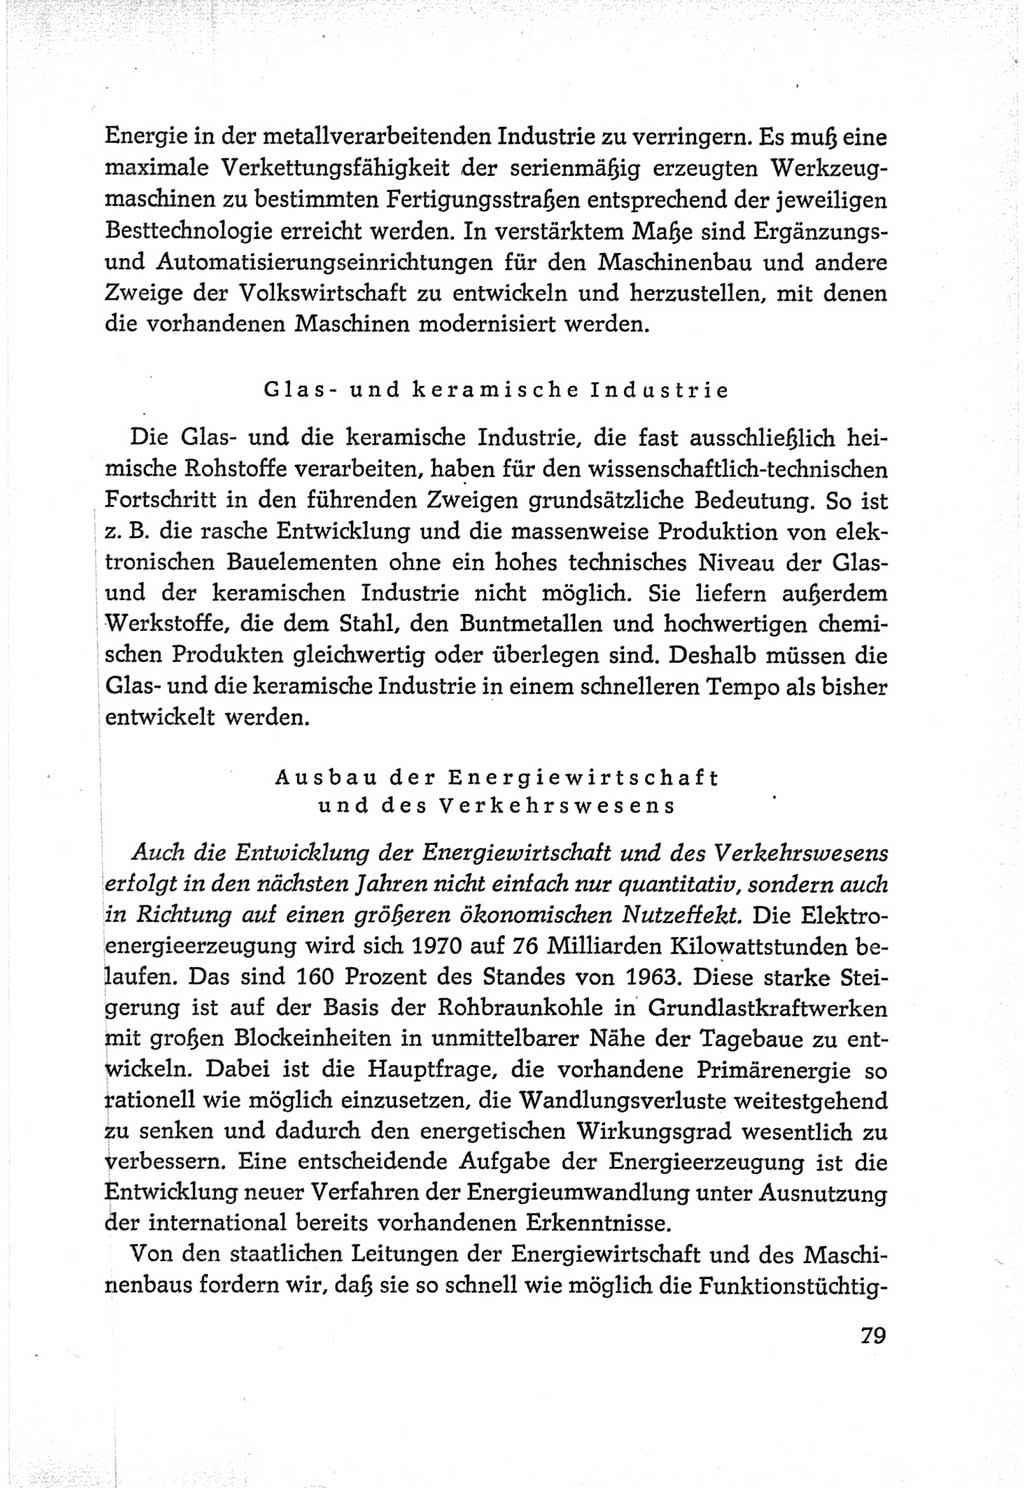 Protokoll der Verhandlungen des Ⅵ. Parteitages der Sozialistischen Einheitspartei Deutschlands (SED) [Deutsche Demokratische Republik (DDR)] 1963, Band Ⅰ, Seite 79 (Prot. Verh. Ⅵ. PT SED DDR 1963, Bd. Ⅰ, S. 79)